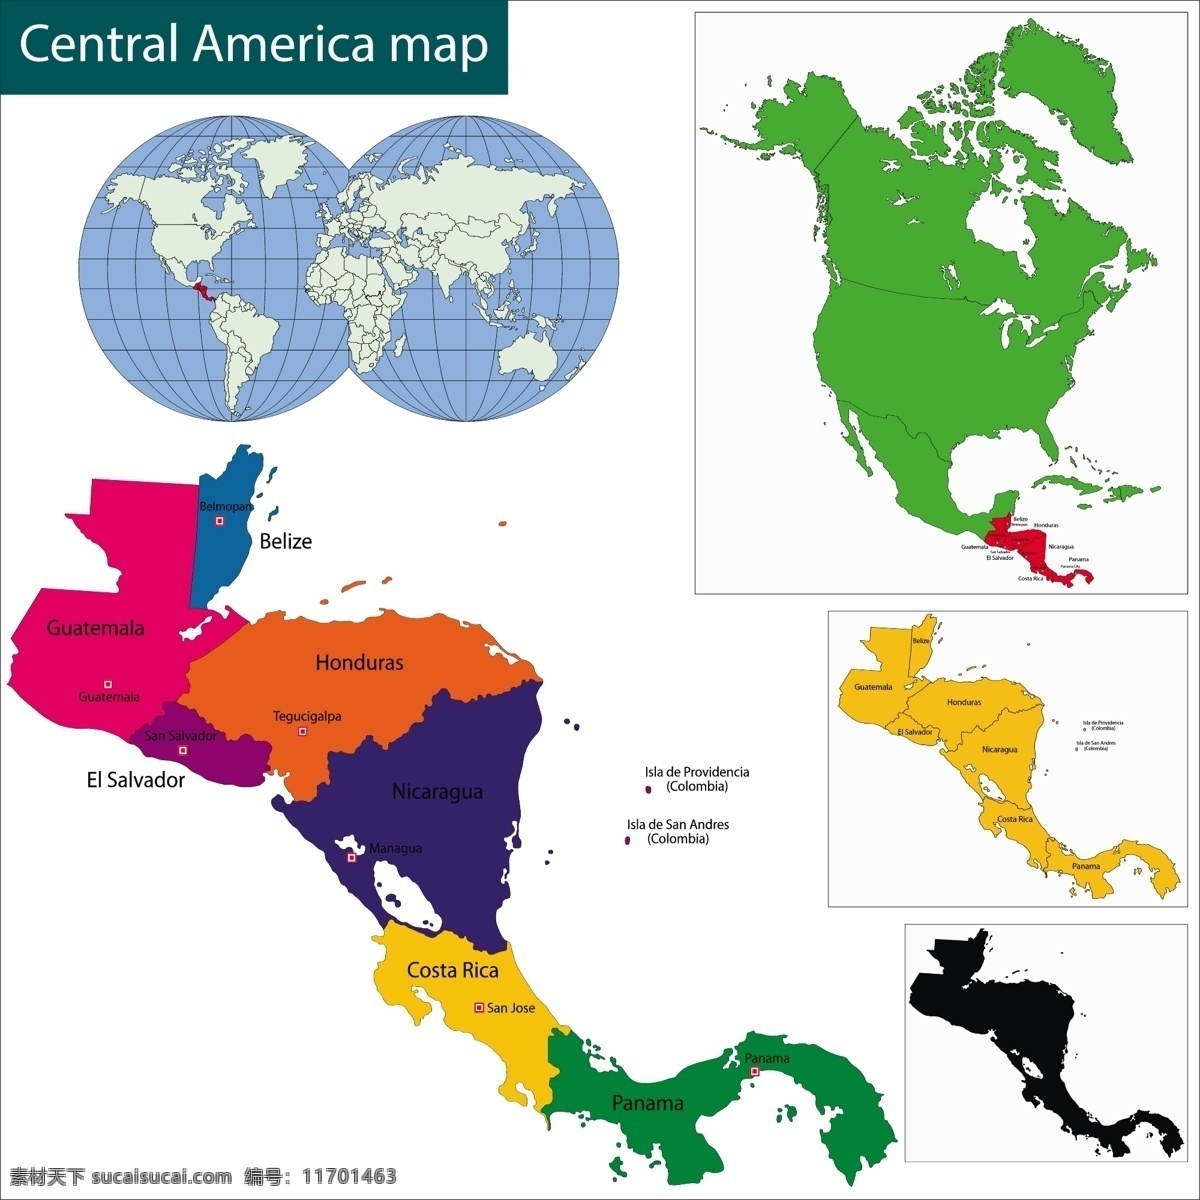 美国 中央 地区 地图 矢量 模板下载 城市 国家地图 世界地图 彩色地图 世界版图 矢量地图 生活百科 矢量素材 白色